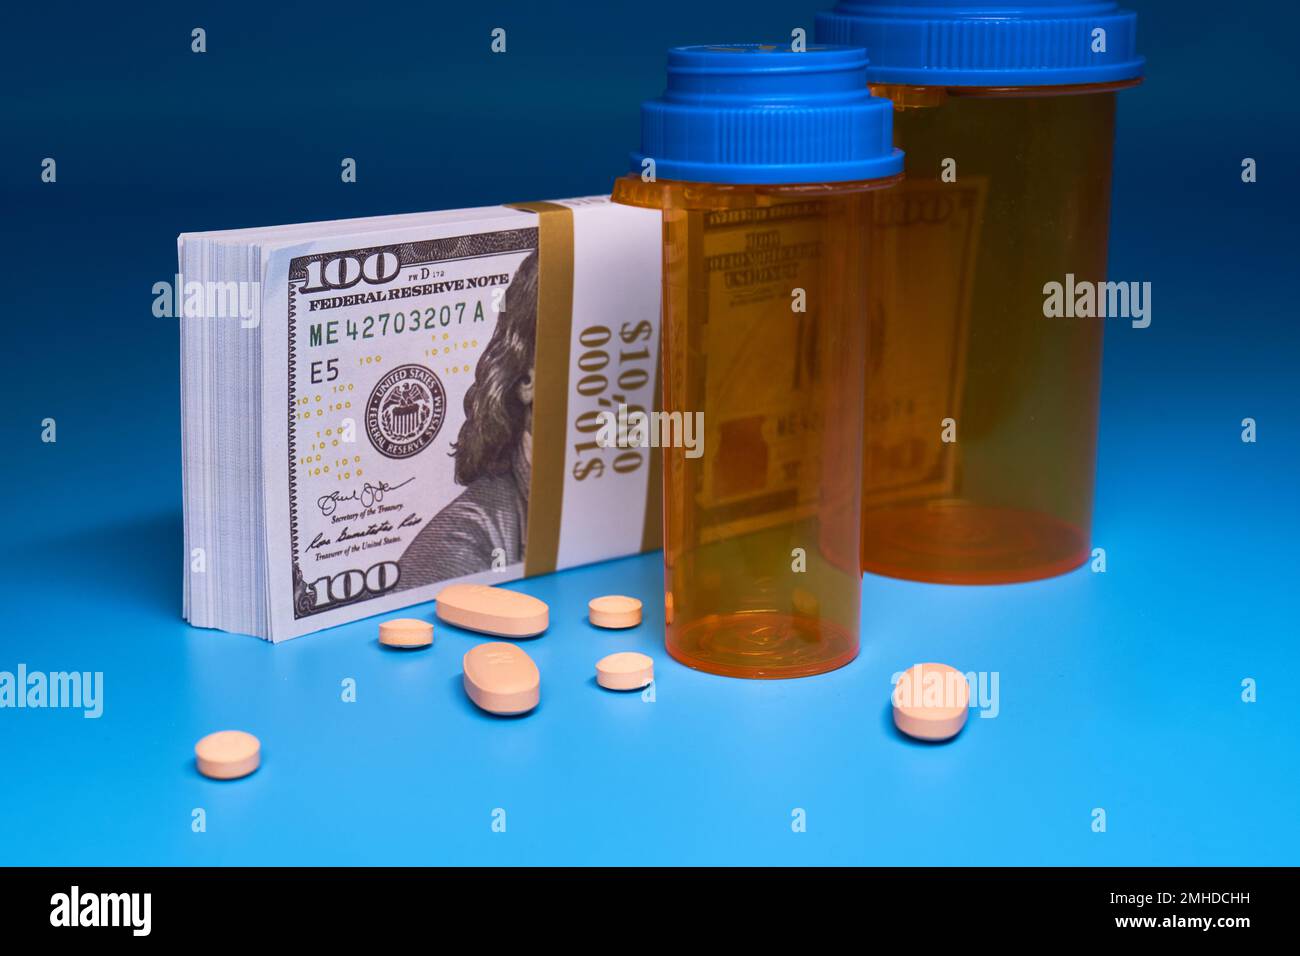 Opioid-Krisen-Medikamente Pillen verschreibungspflichtige Medikamente und Geld hellblauer Hintergrund Medikamentenflasche Hunderte von Dollar Stockfoto